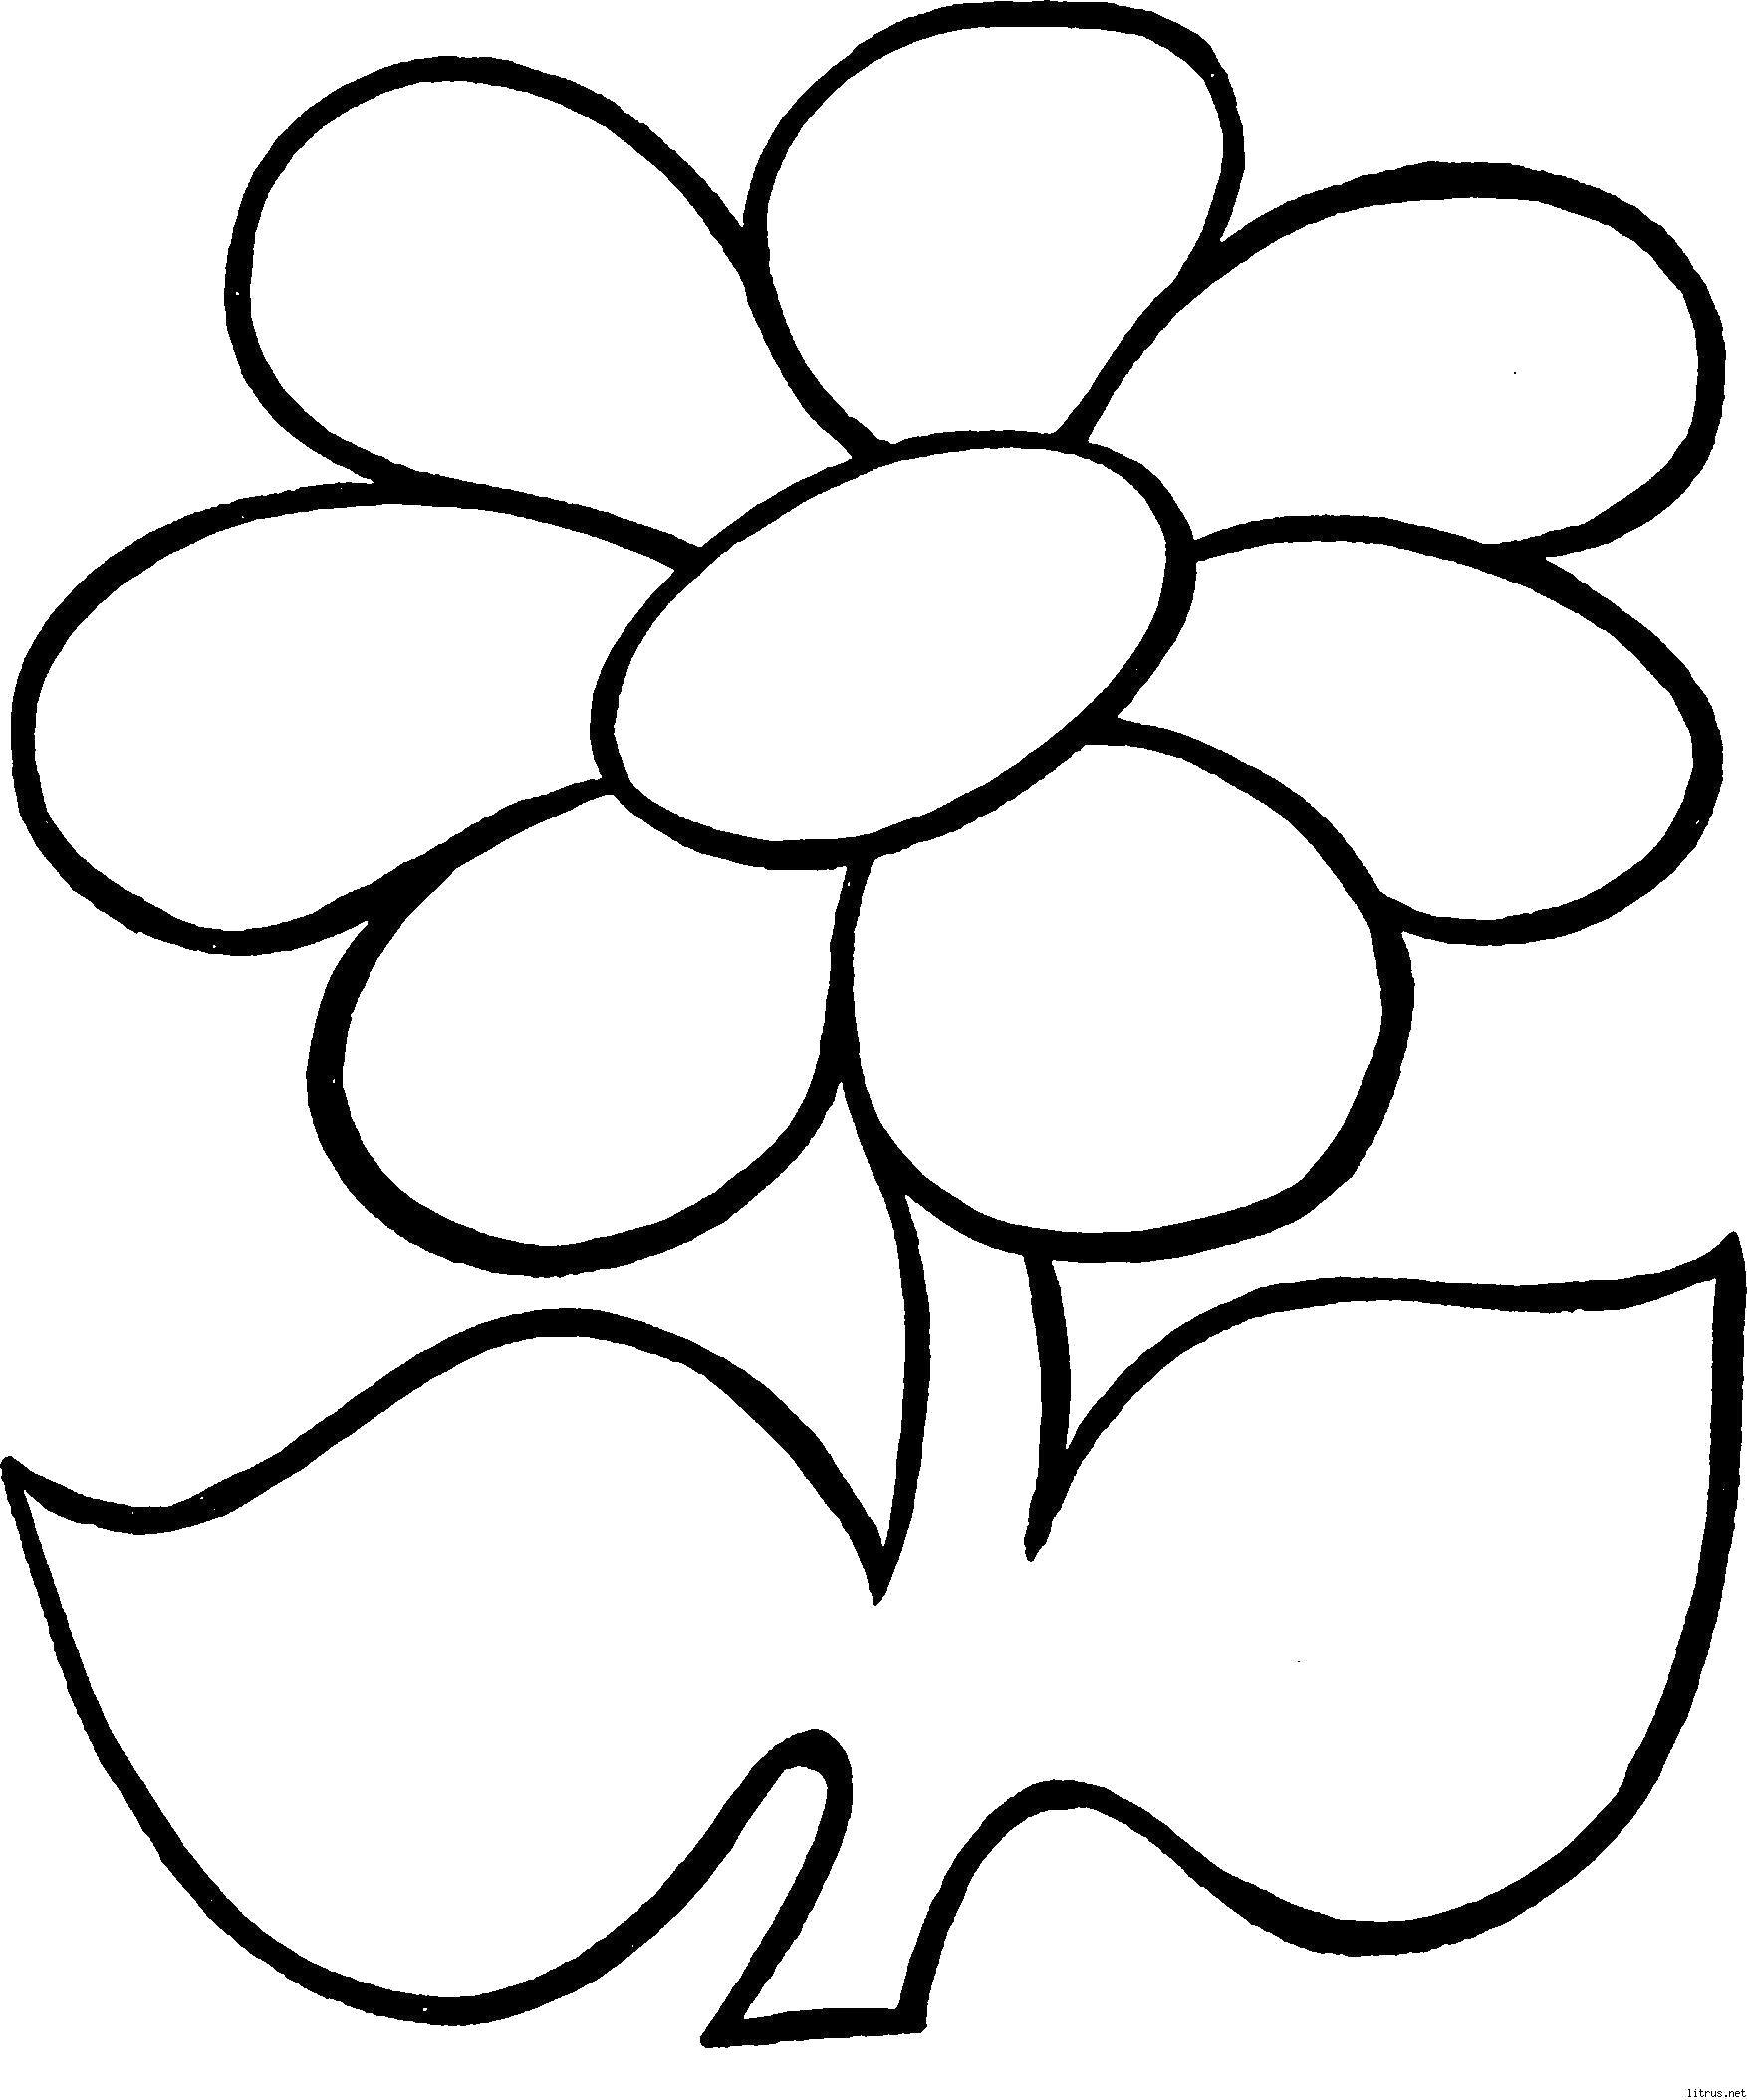 Раскраска по номерам Цветик с конференц-зал-самара.рфми, Морские обитатели, А4 | Маэстрия